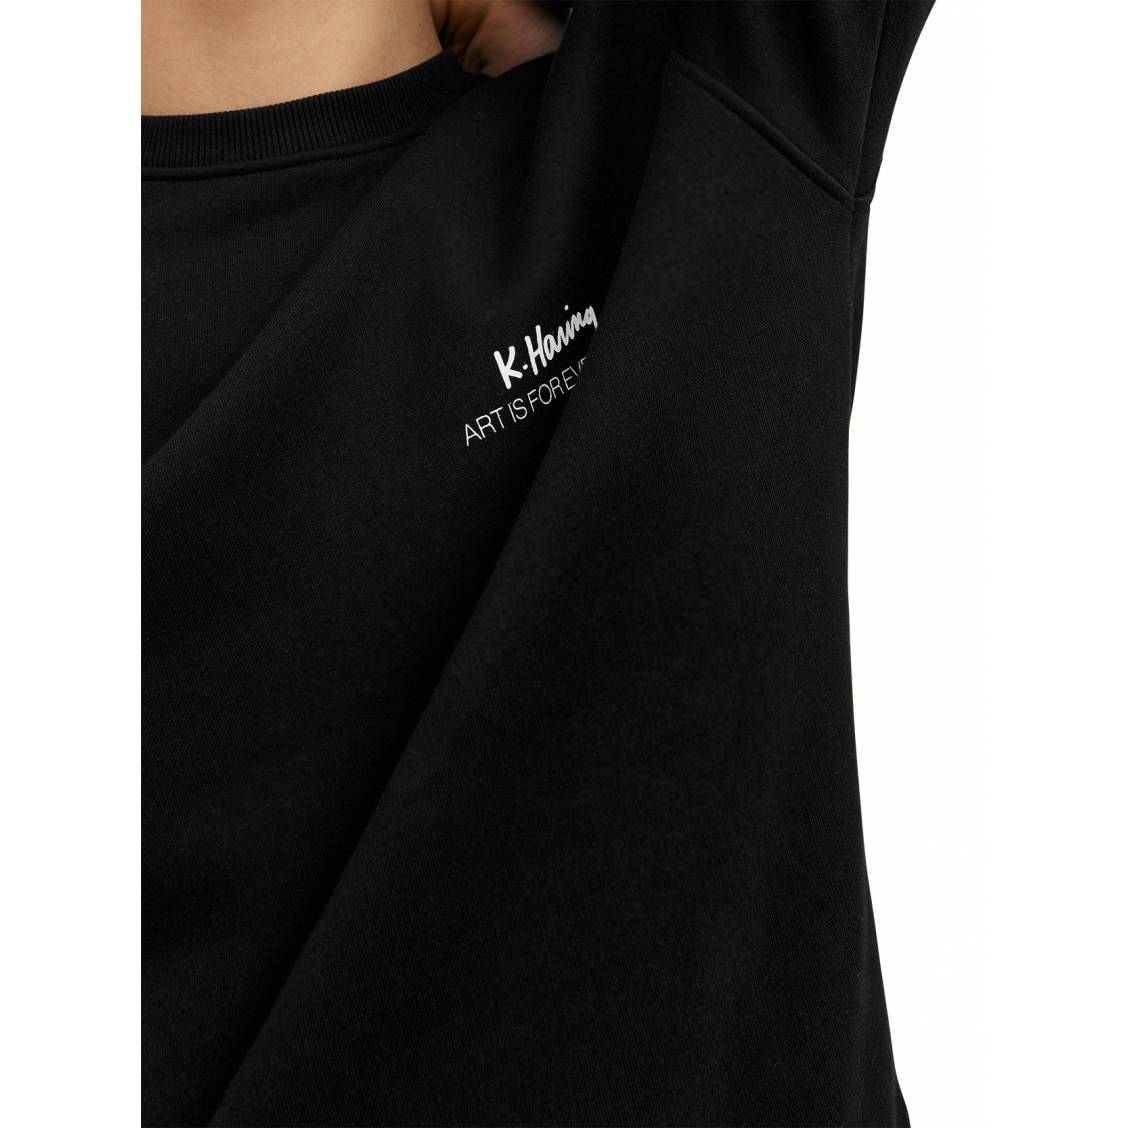 JACK & JONES - T-shirt manches longues - noir Couleur Noir Taille 7/8 ans